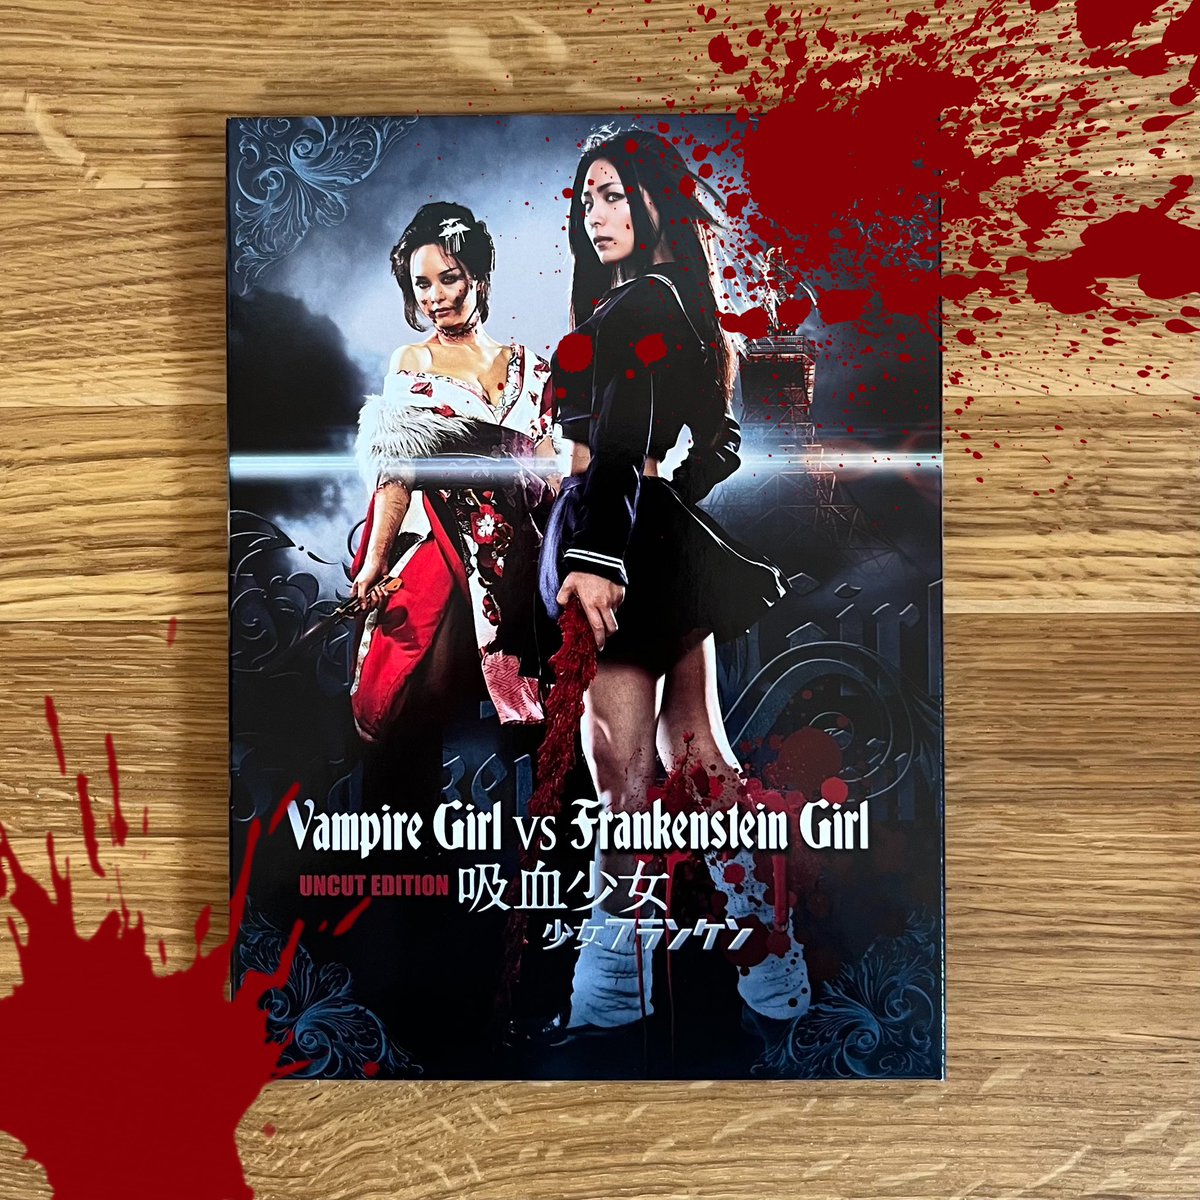 Japanese bloody #GRLPWR, now! ✌🏻

#NowWatching: Vampire Girl Vs. Frankenstein Girl (2009). 🥳

#Uncut #DVD #Horror #Splatter #Action #Comedy #Japan #FilmTwitter